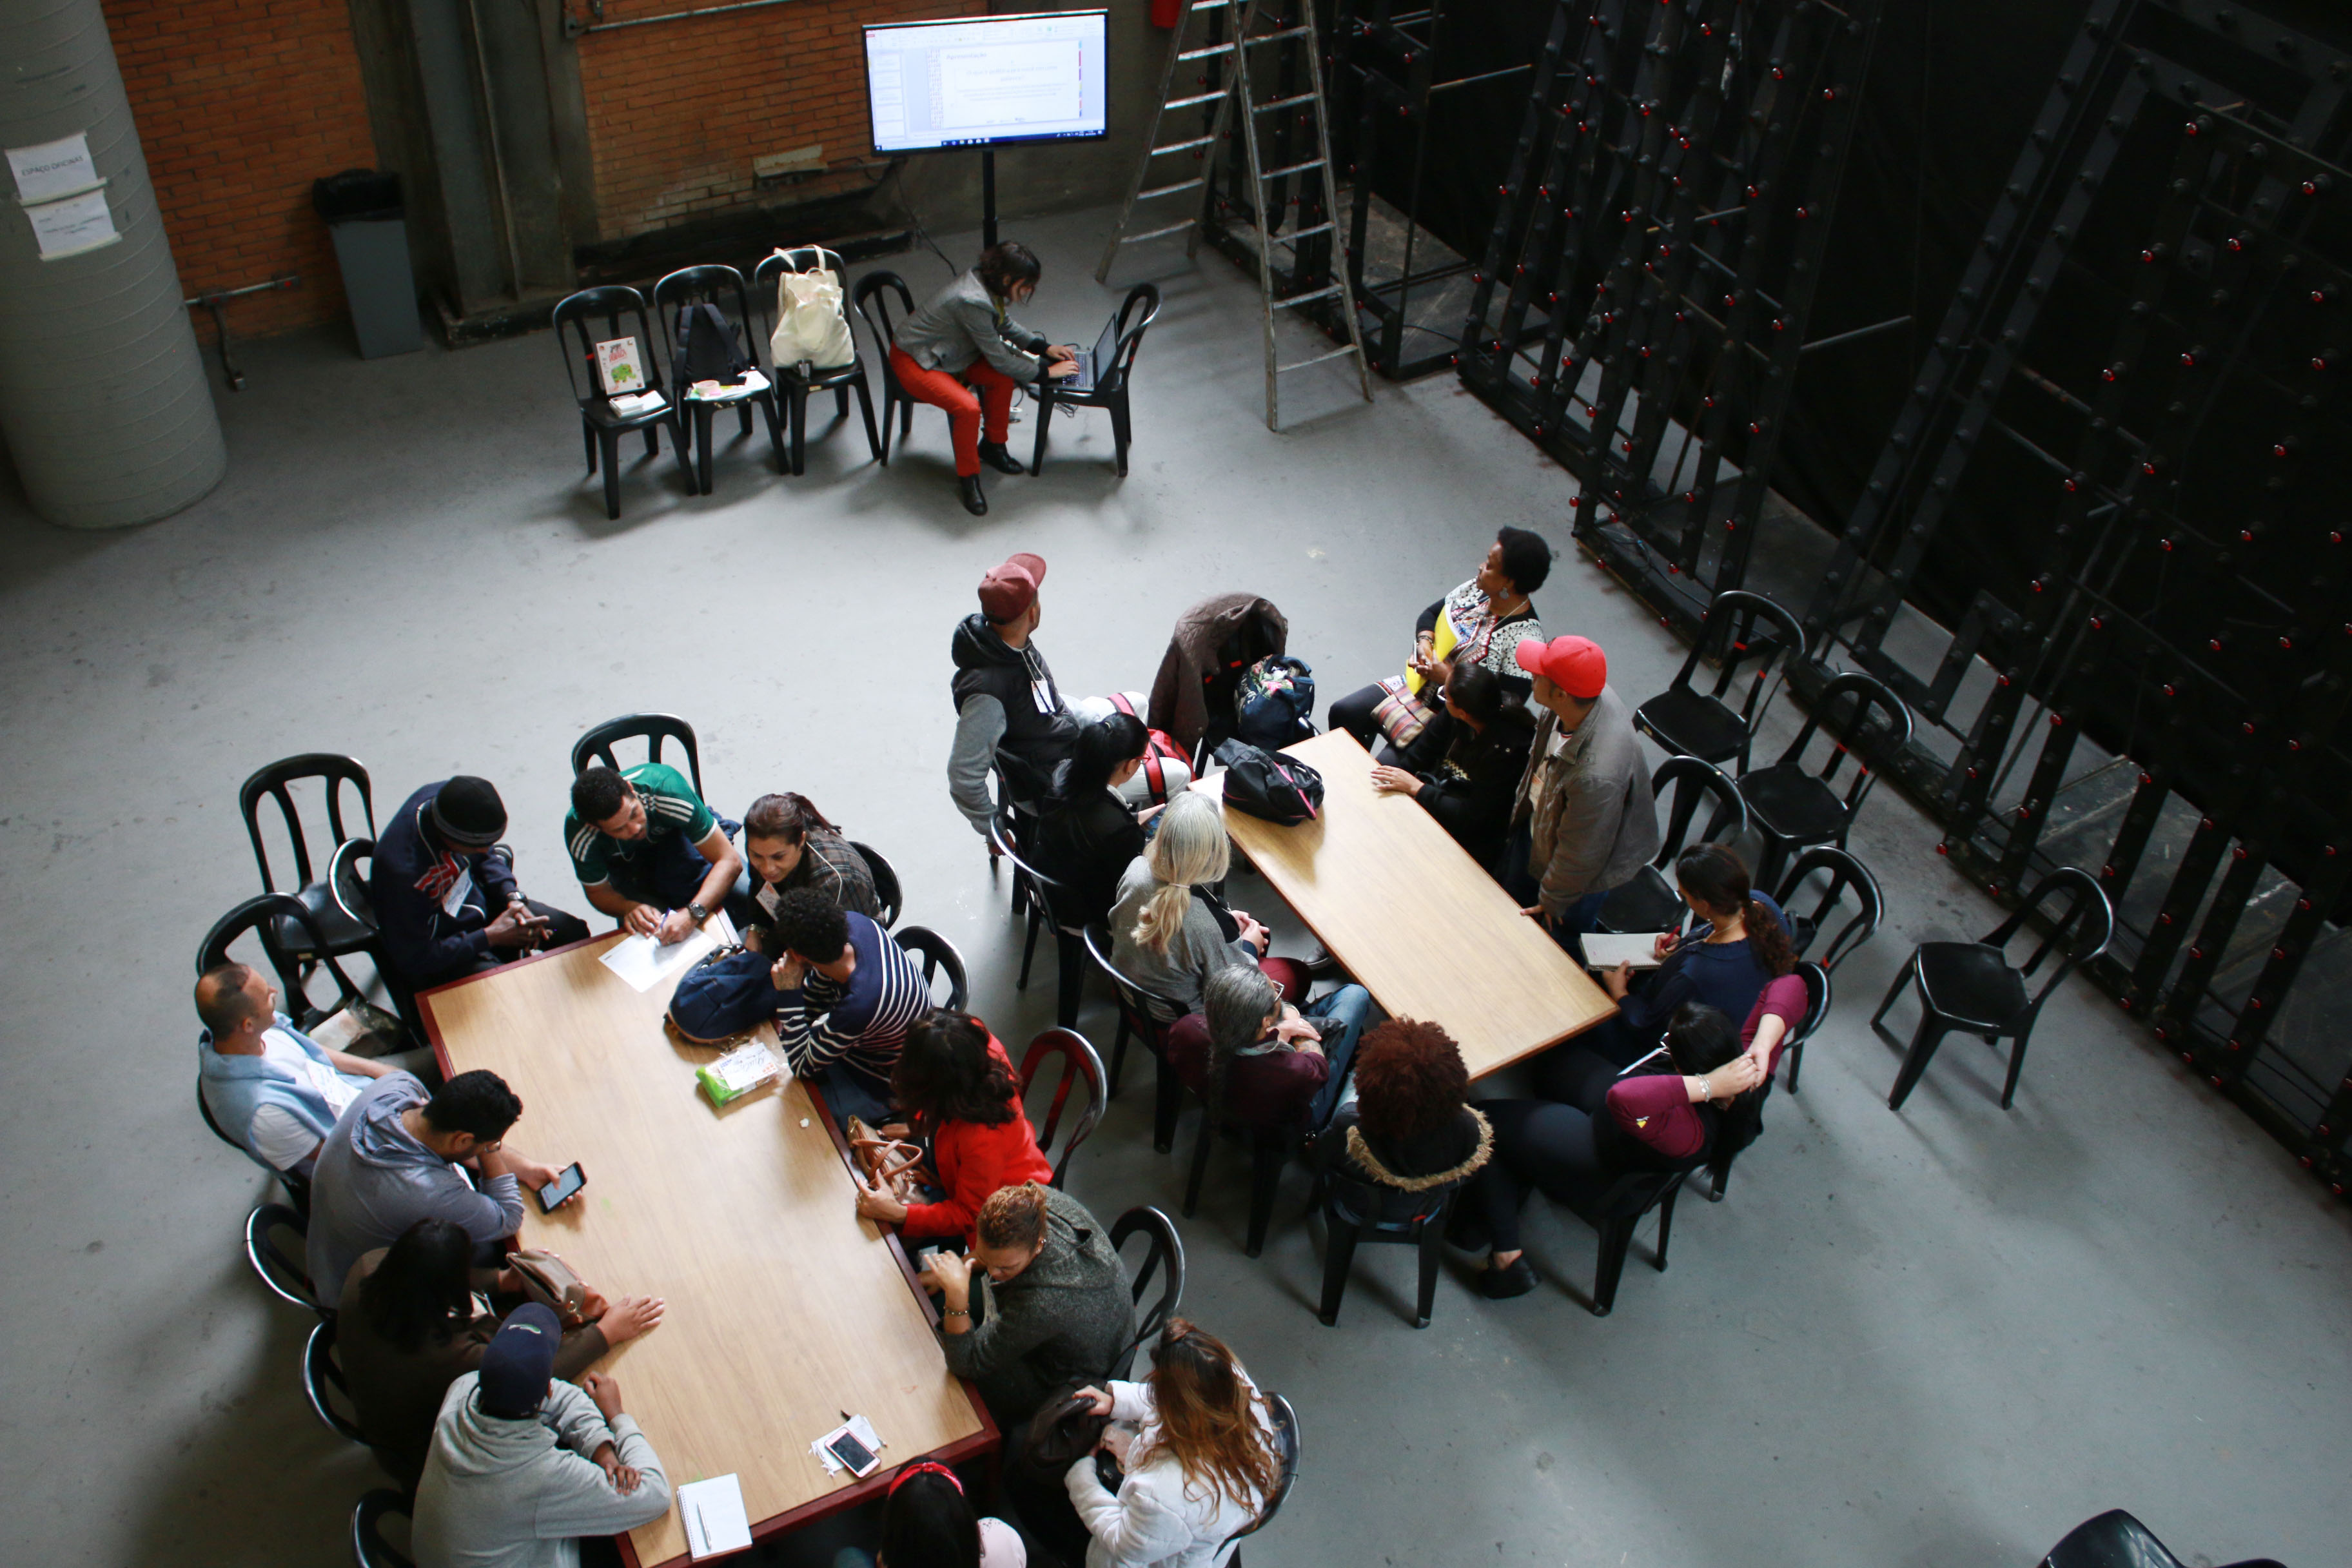 Vinte e duas pessoas divididas em duas mesas de maneiras realizam atividade com papéis e calculadora. Separada do grupo, uma mulher mexe em notebook conectado a uma tela.